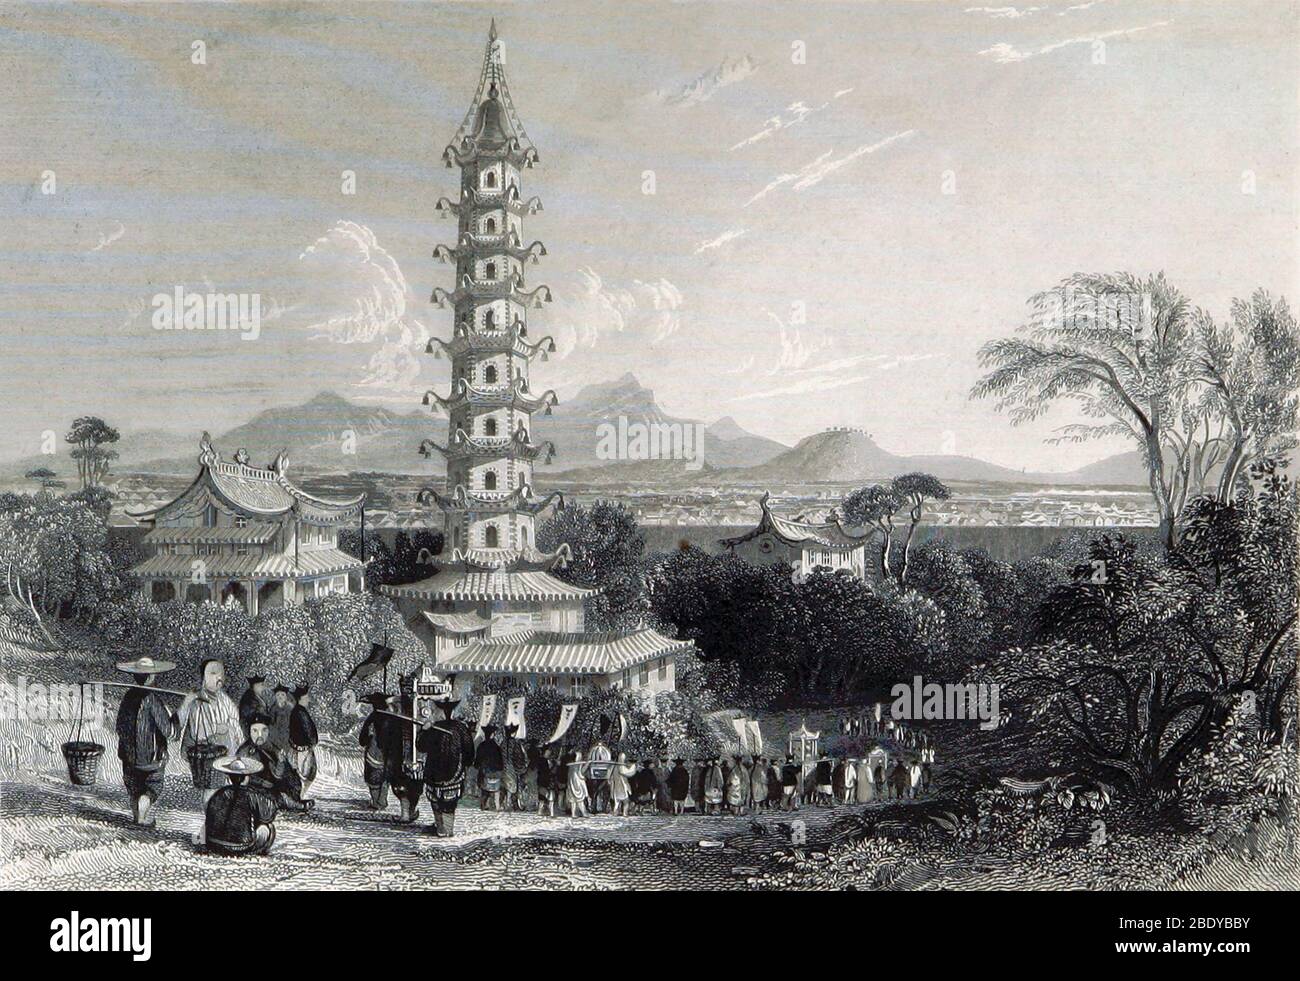 Porzellanturm von Nanjing, 19. Jahrhundert Stockfoto